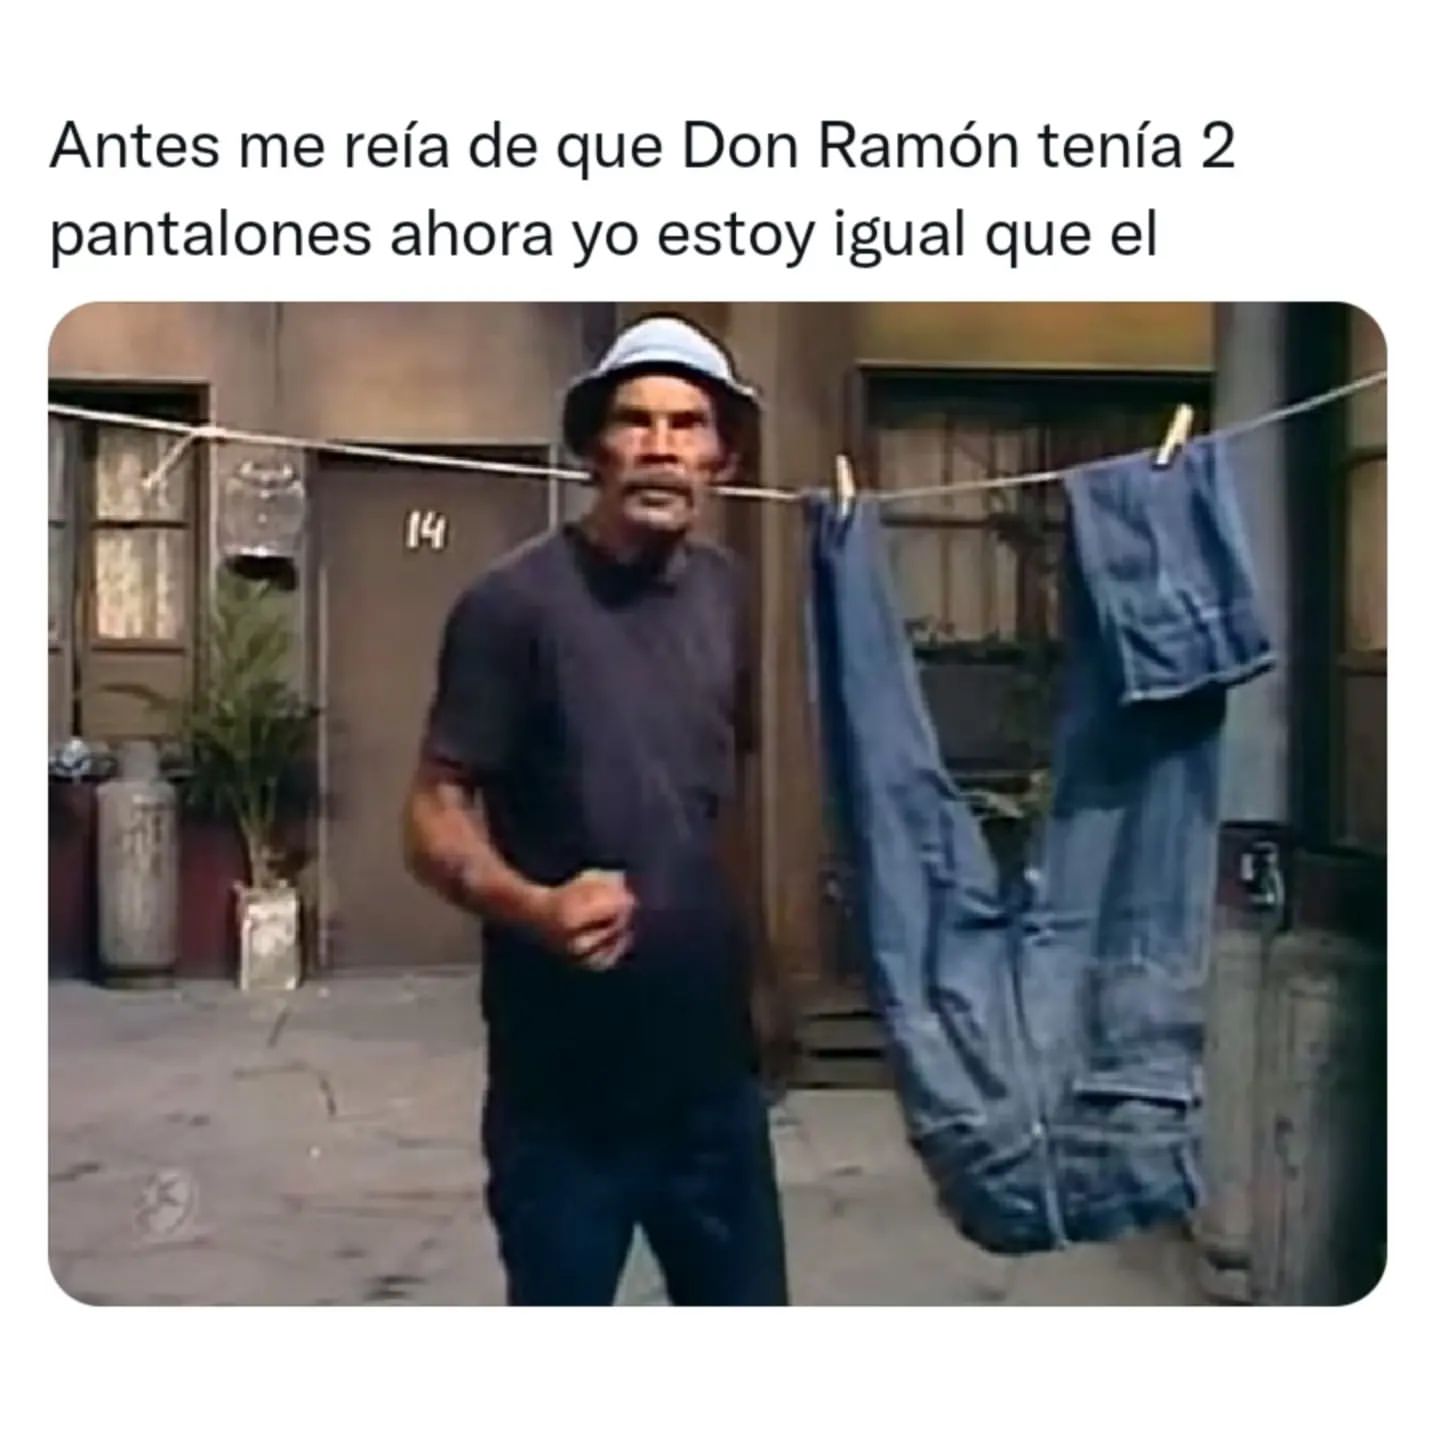 Antes me reía de que Don Ramón tenía 2 pantalones ahora yo estoy igual que él.